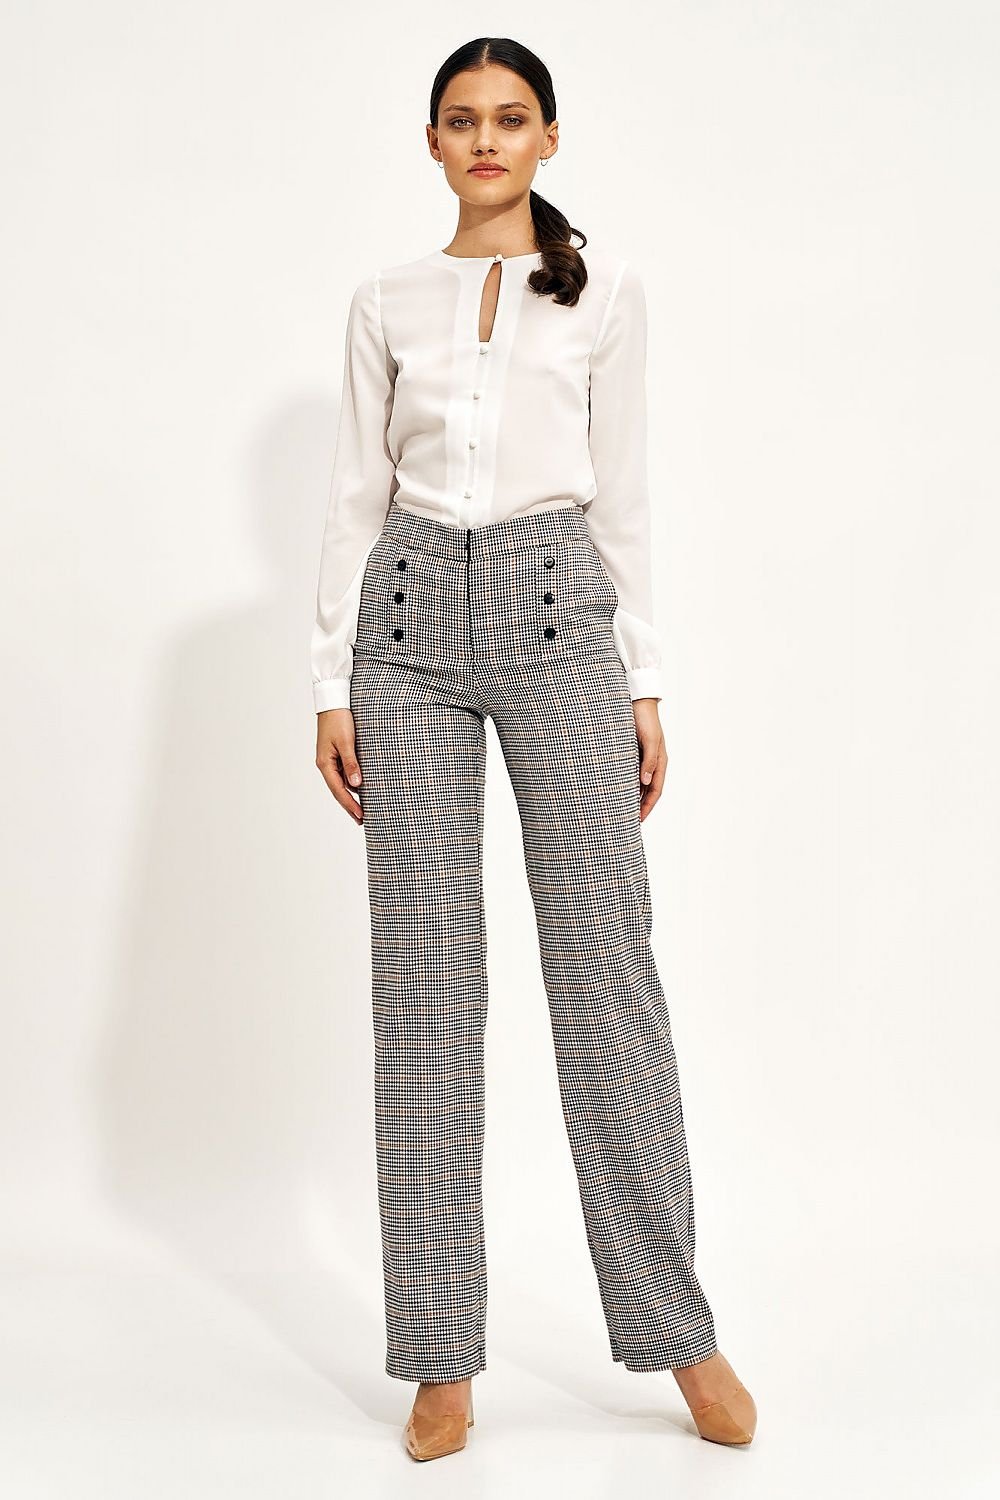 Women trousers model 170476 Nife